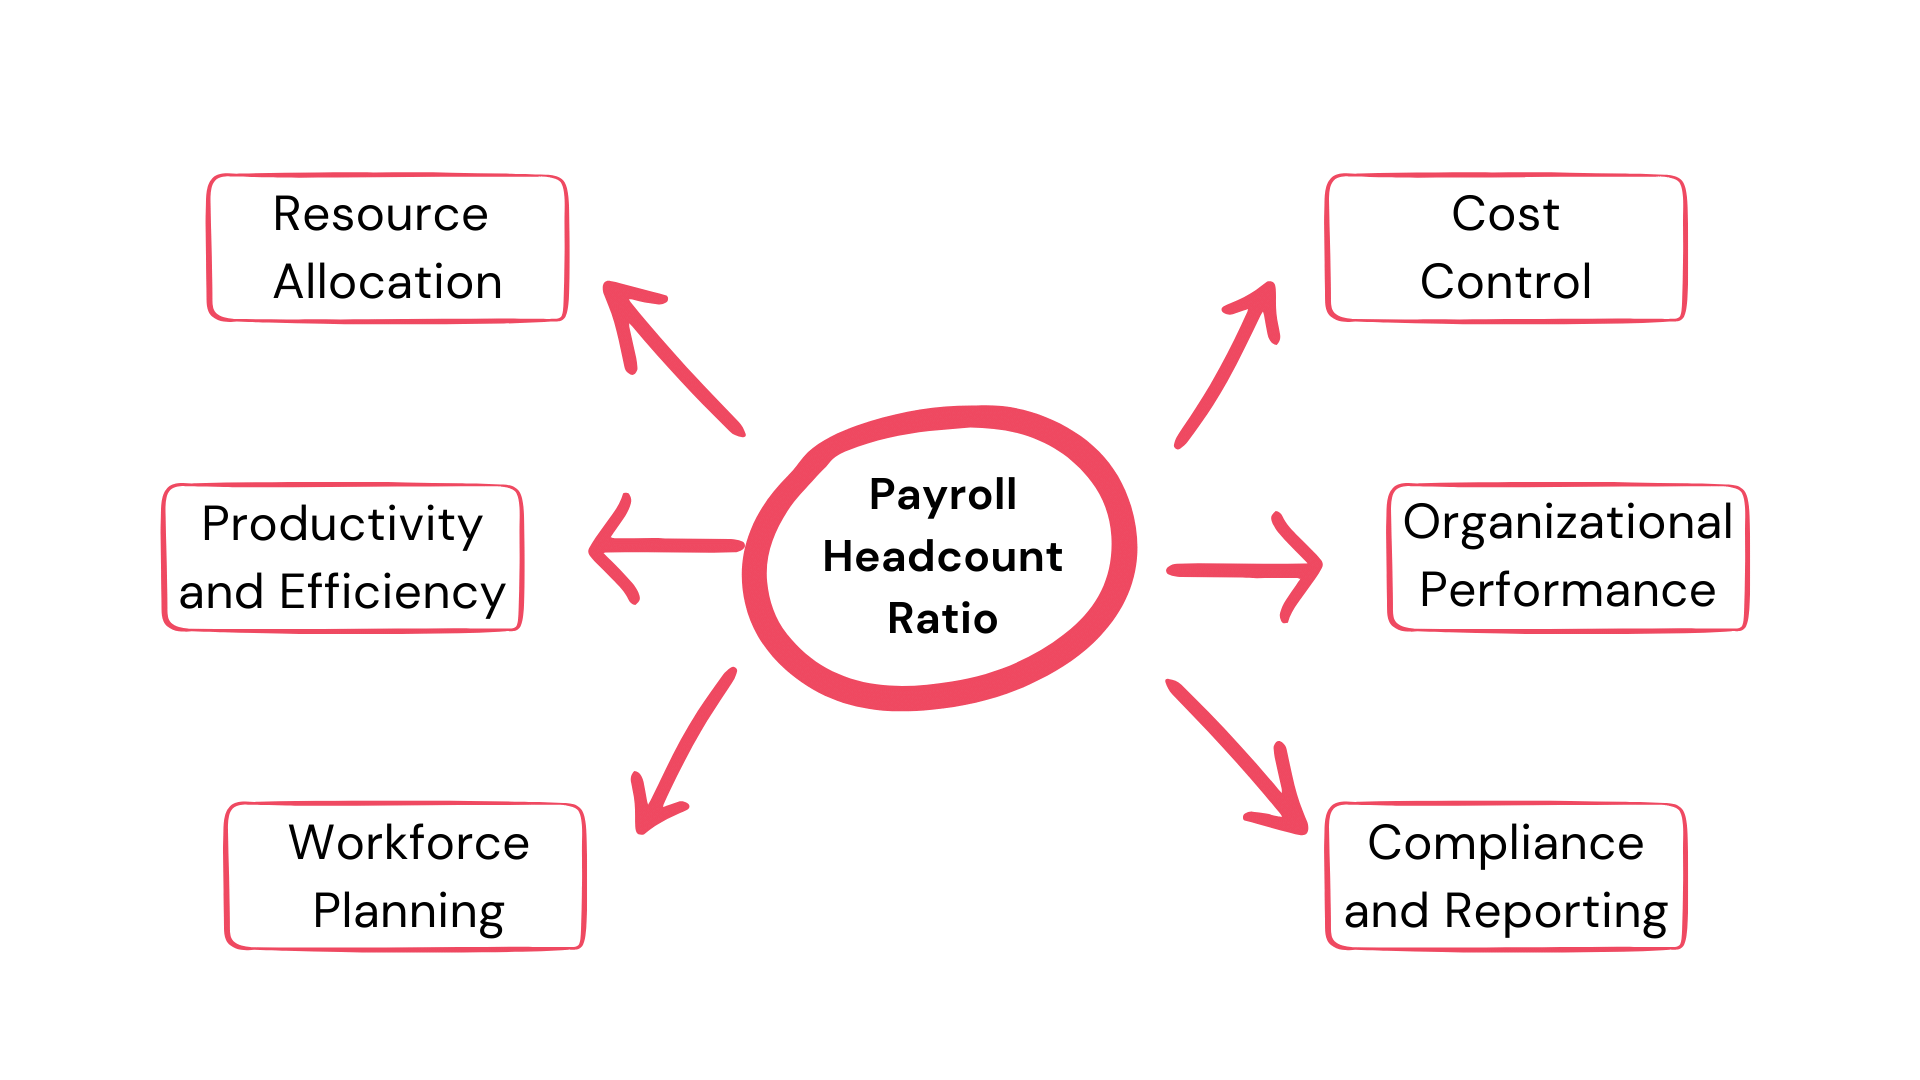 Payroll Headcount Ratio